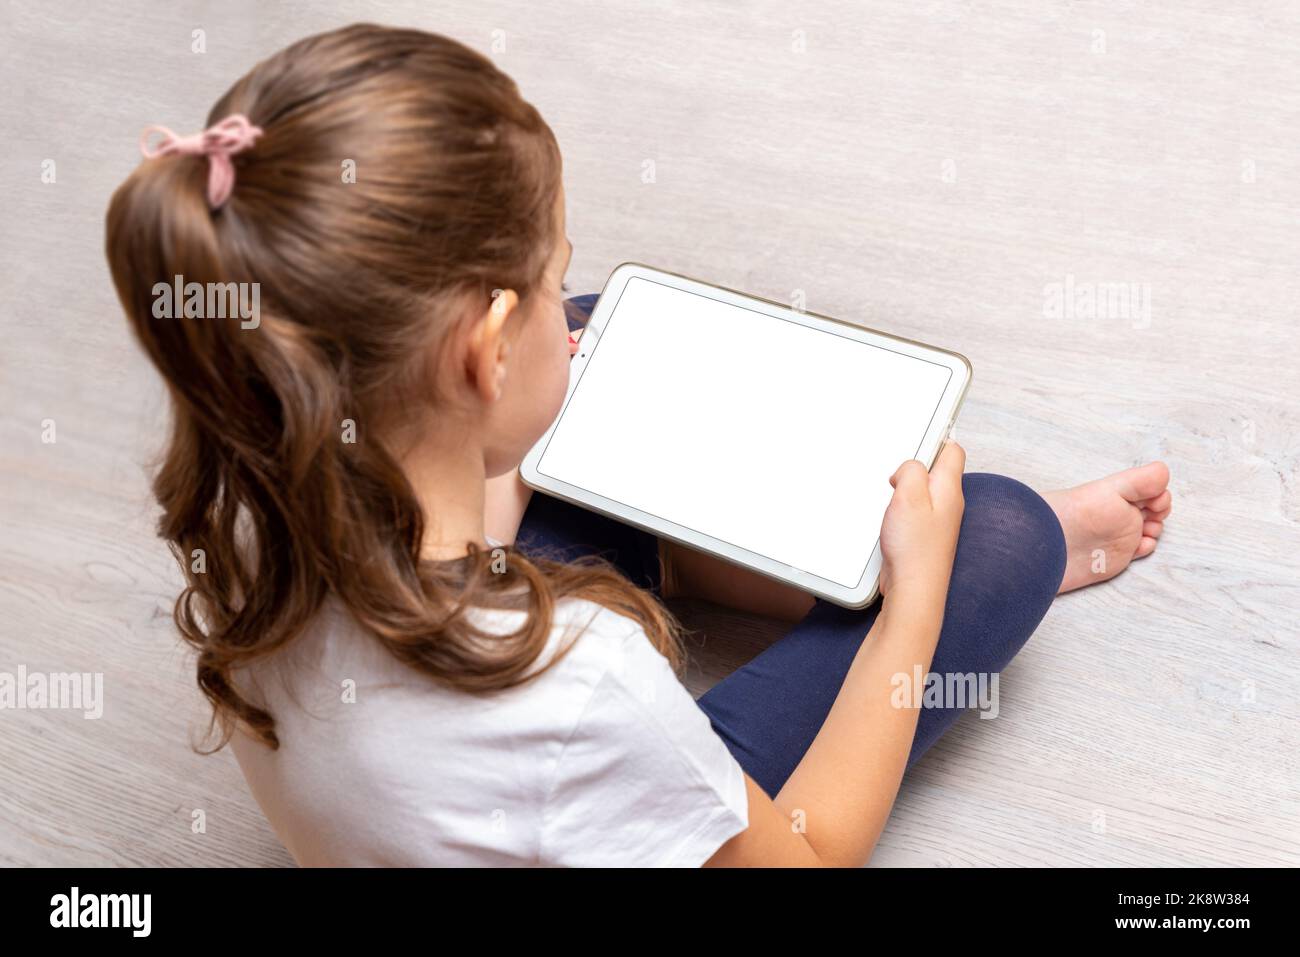 Niña sentada en el suelo y sosteniendo una tableta blanca con pantalla aislada para promocionar videojuegos, sitios web o aplicaciones Foto de stock